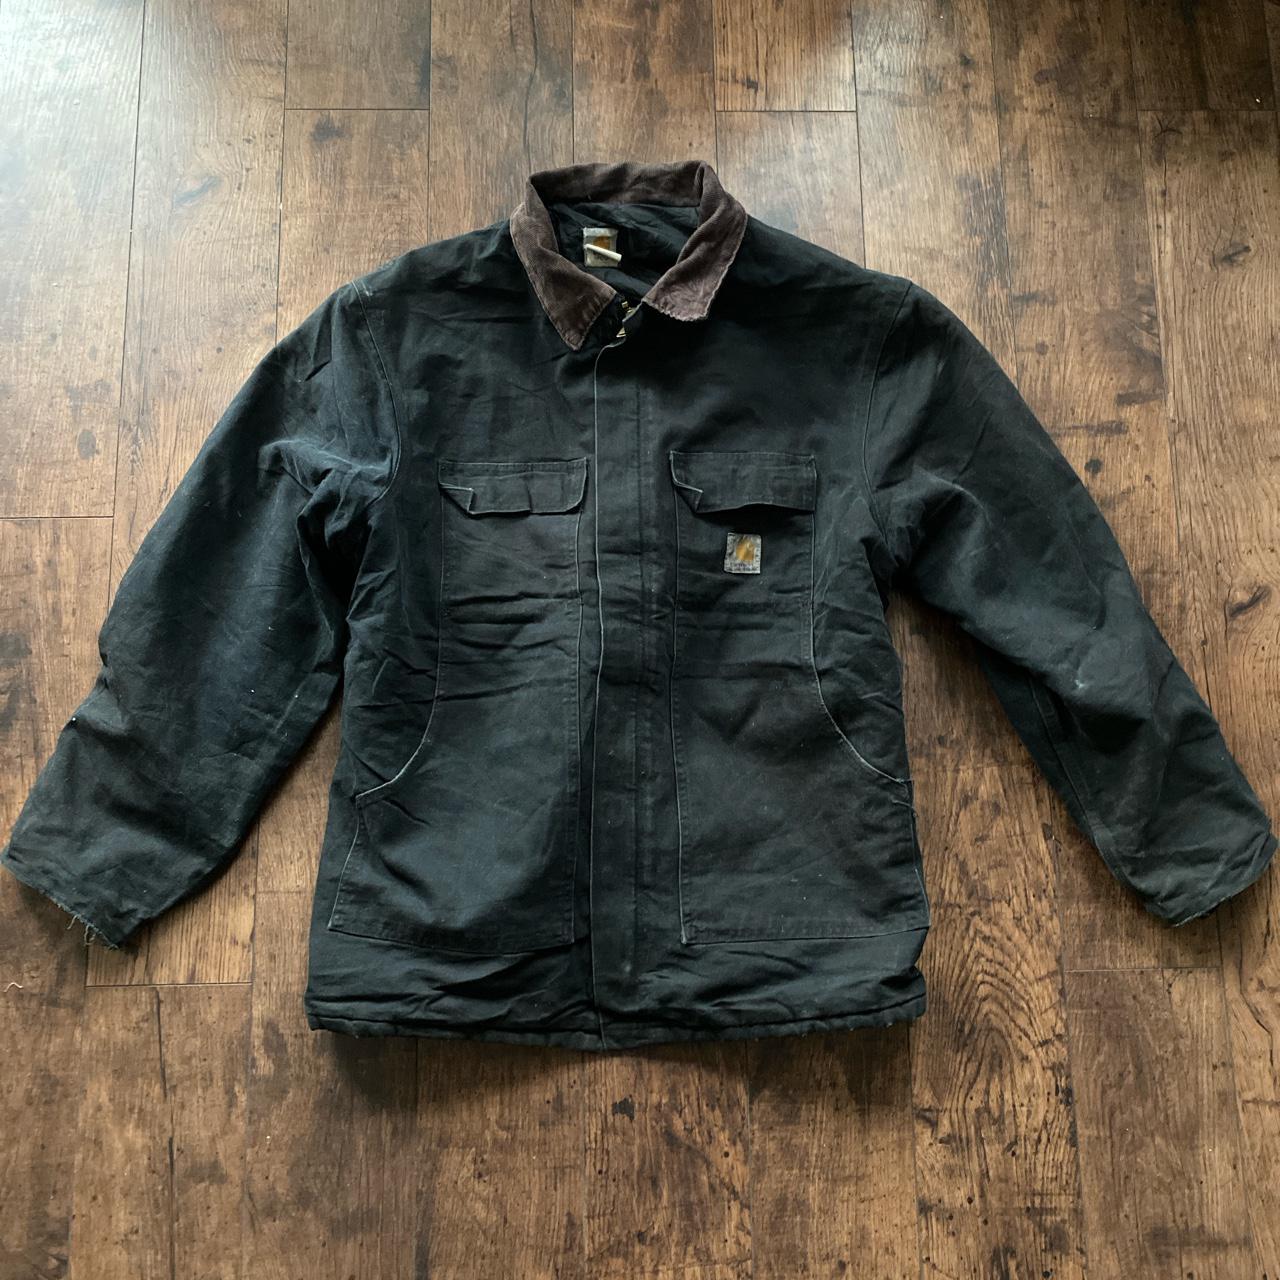 Black vintage Carhartt jacket with good pockets. In... - Depop